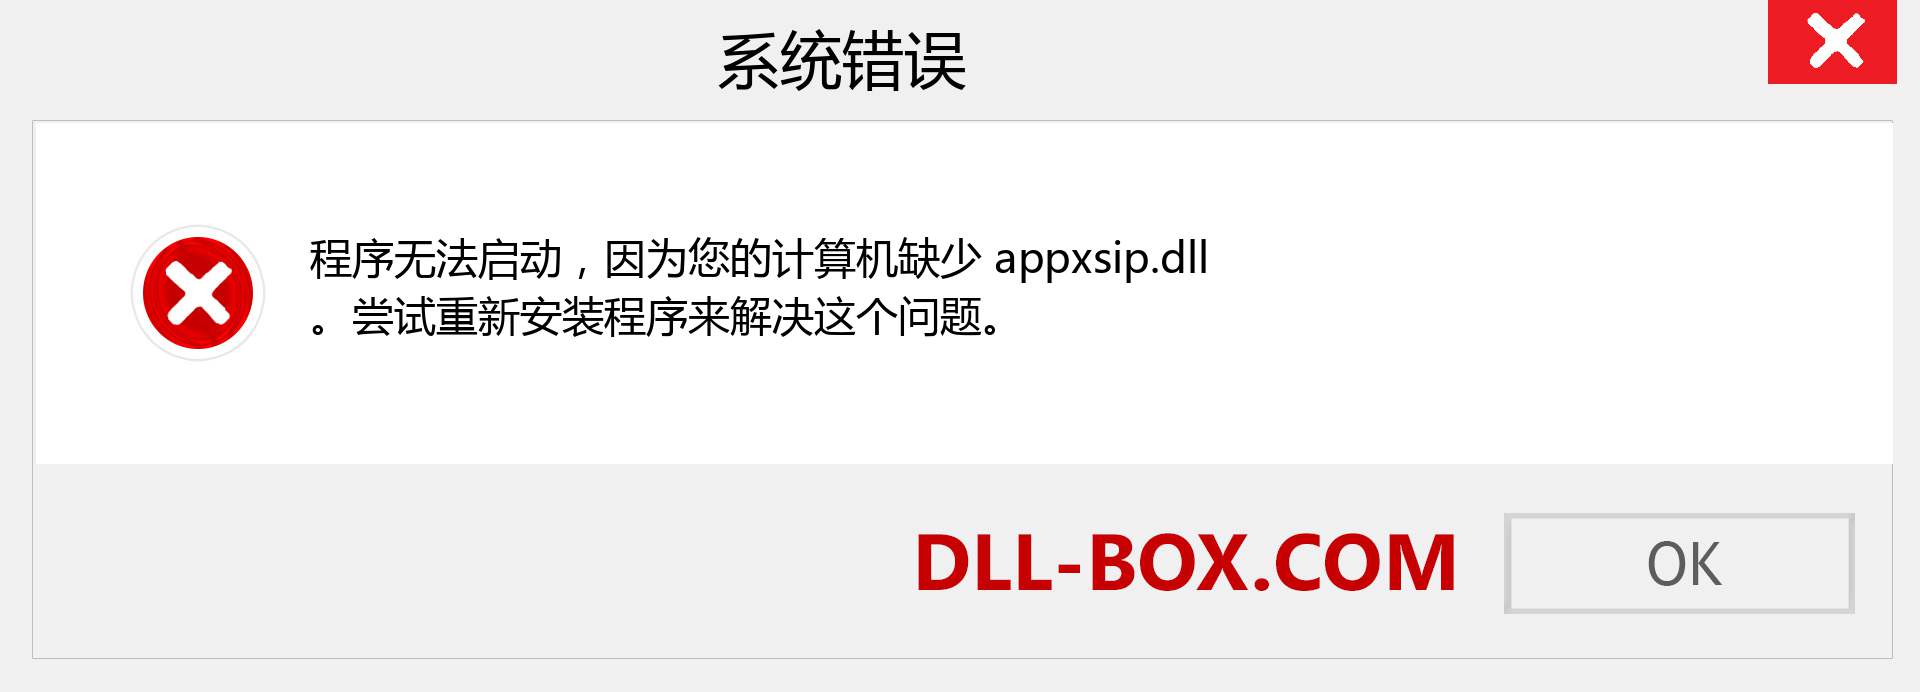 appxsip.dll 文件丢失？。 适用于 Windows 7、8、10 的下载 - 修复 Windows、照片、图像上的 appxsip dll 丢失错误